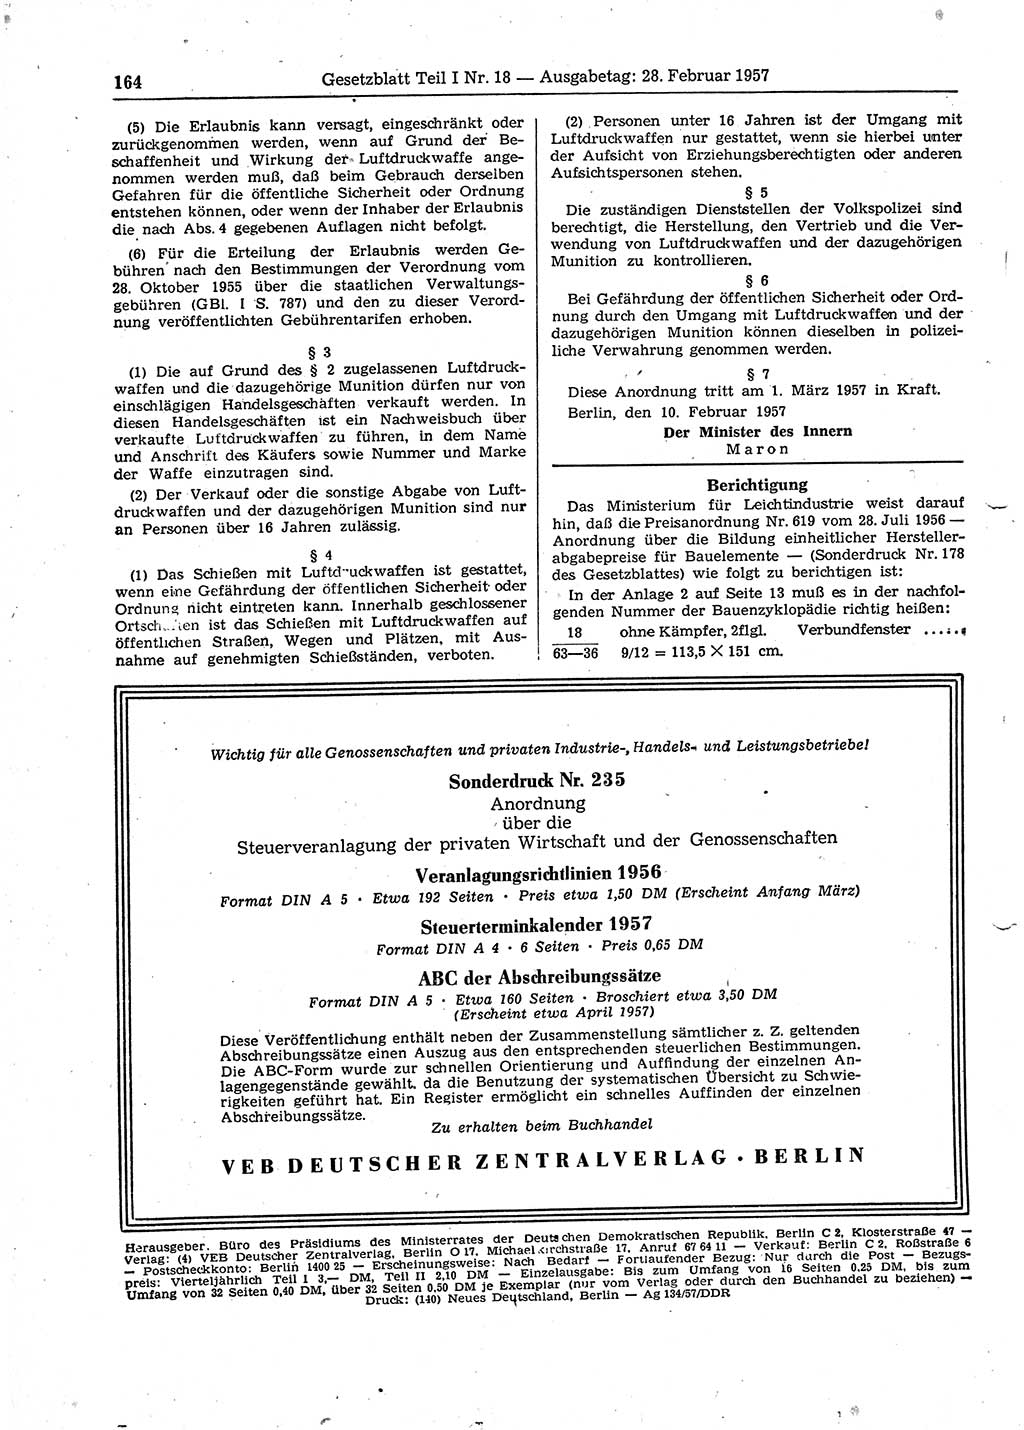 Gesetzblatt (GBl.) der Deutschen Demokratischen Republik (DDR) Teil Ⅰ 1957, Seite 164 (GBl. DDR Ⅰ 1957, S. 164)